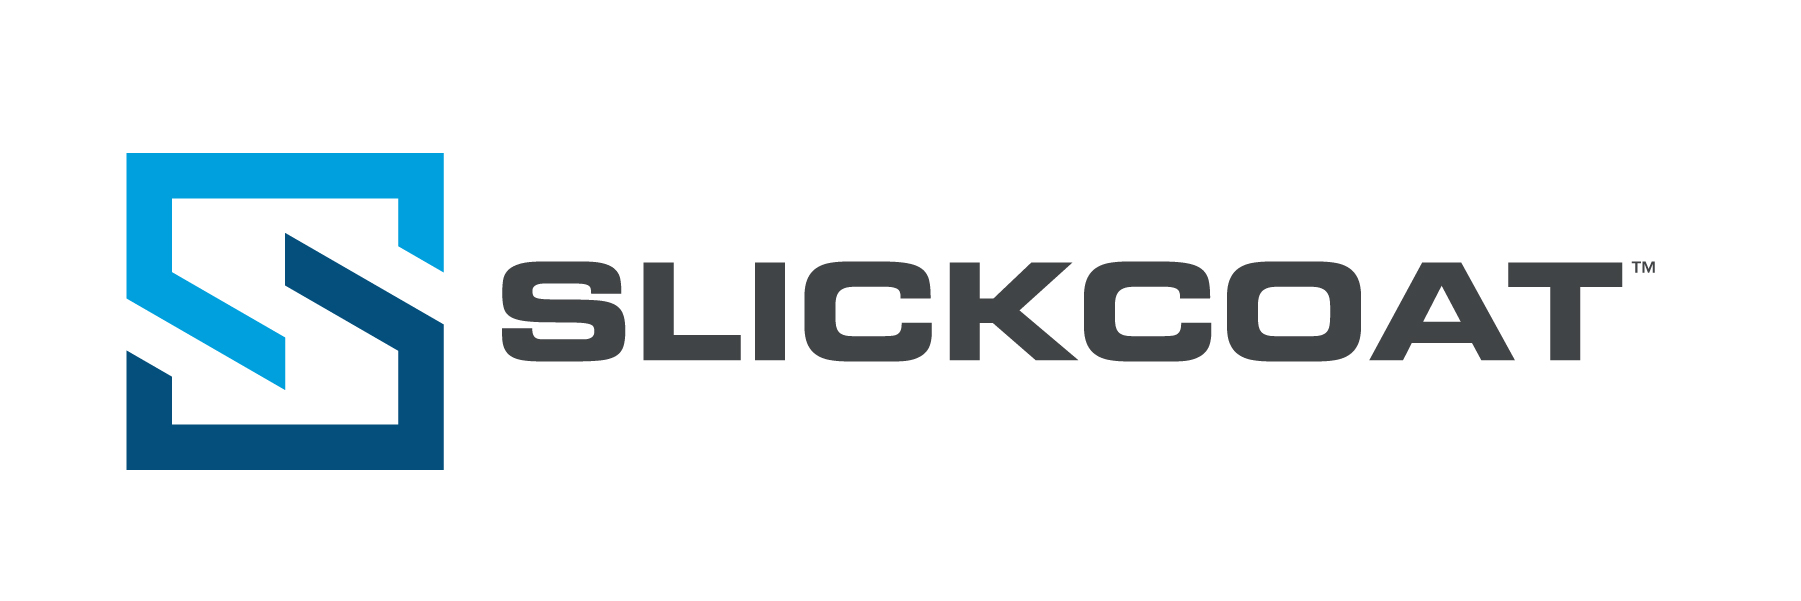 Slickcoat Friction Reduction Coating Logo